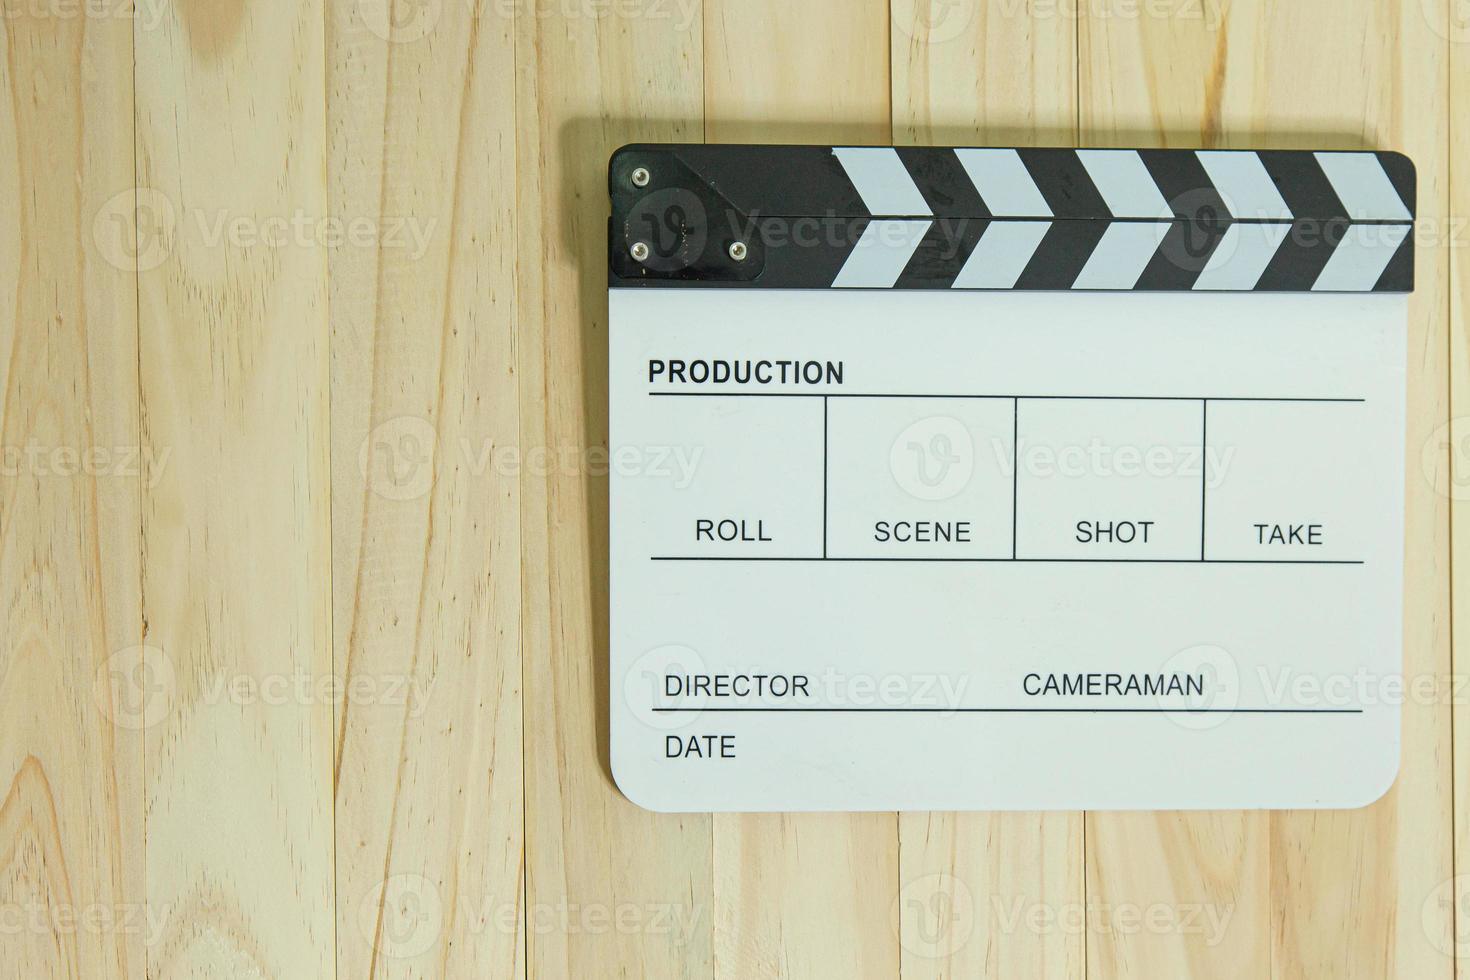 Filmtafel auf Holz für Filminhalte. foto